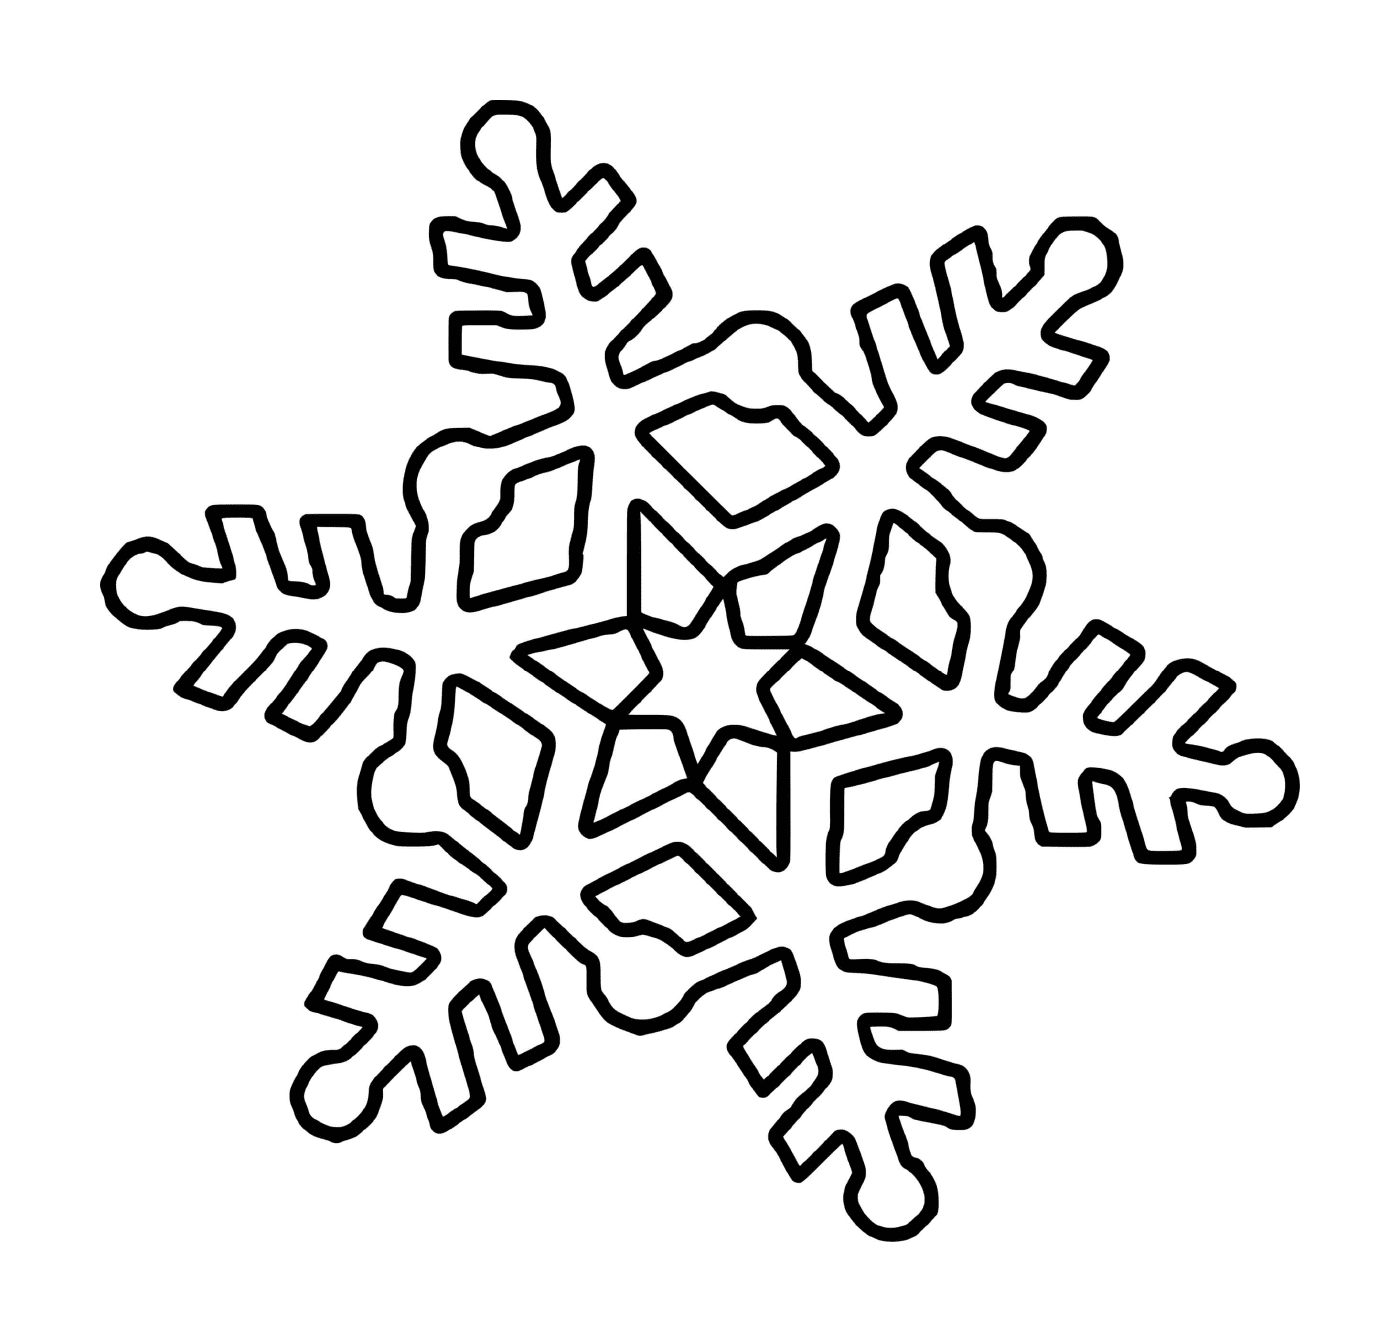  Um floco de neve hexagonal com uma estrela 